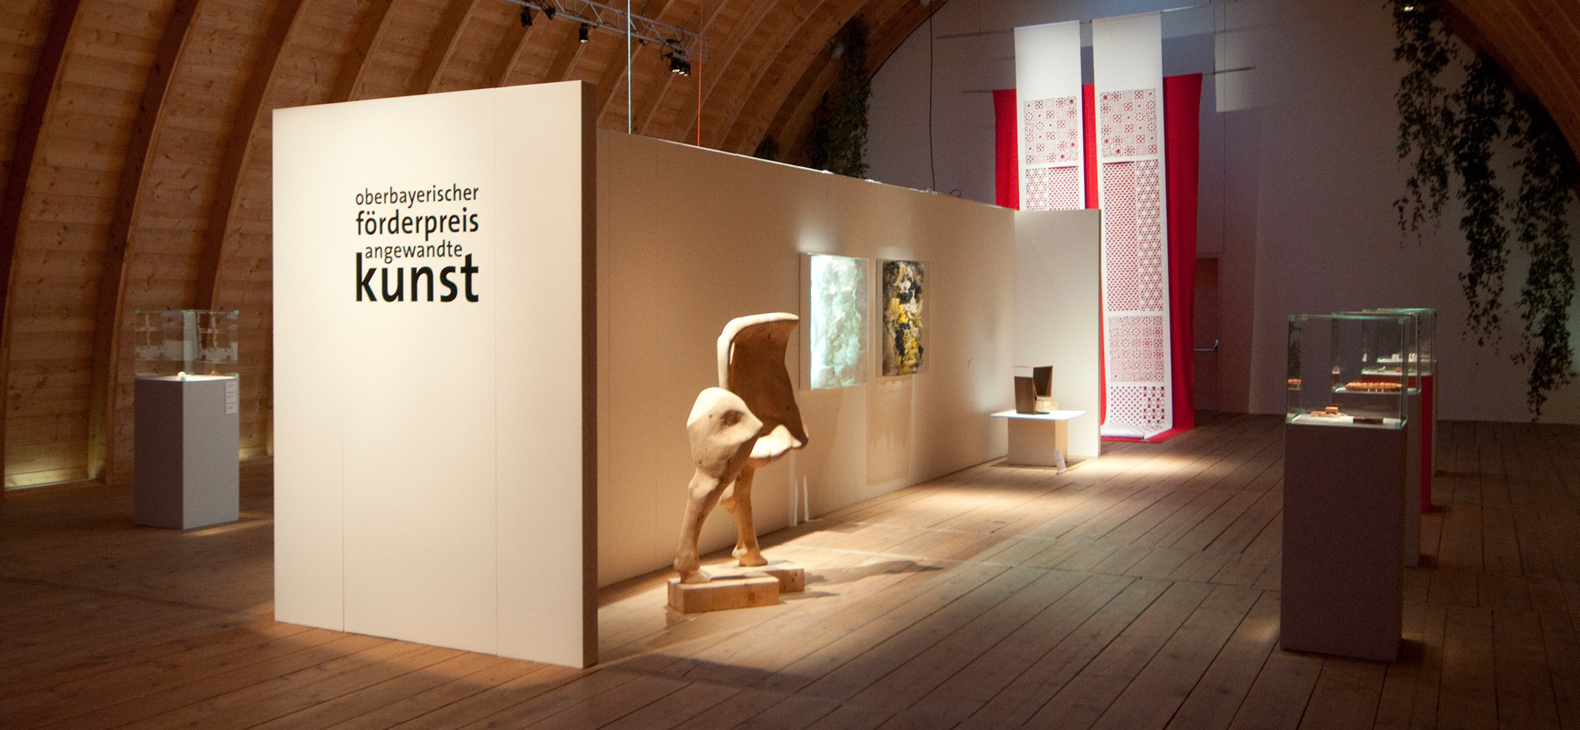 Blick in die Ausstellung, es sind mehrere Kunstwerke zu sehen. In der MItte eine Trennwand mit dem Schriftzug "oberbayerischer  förderpreis angewandte kunst" am Kopfende.